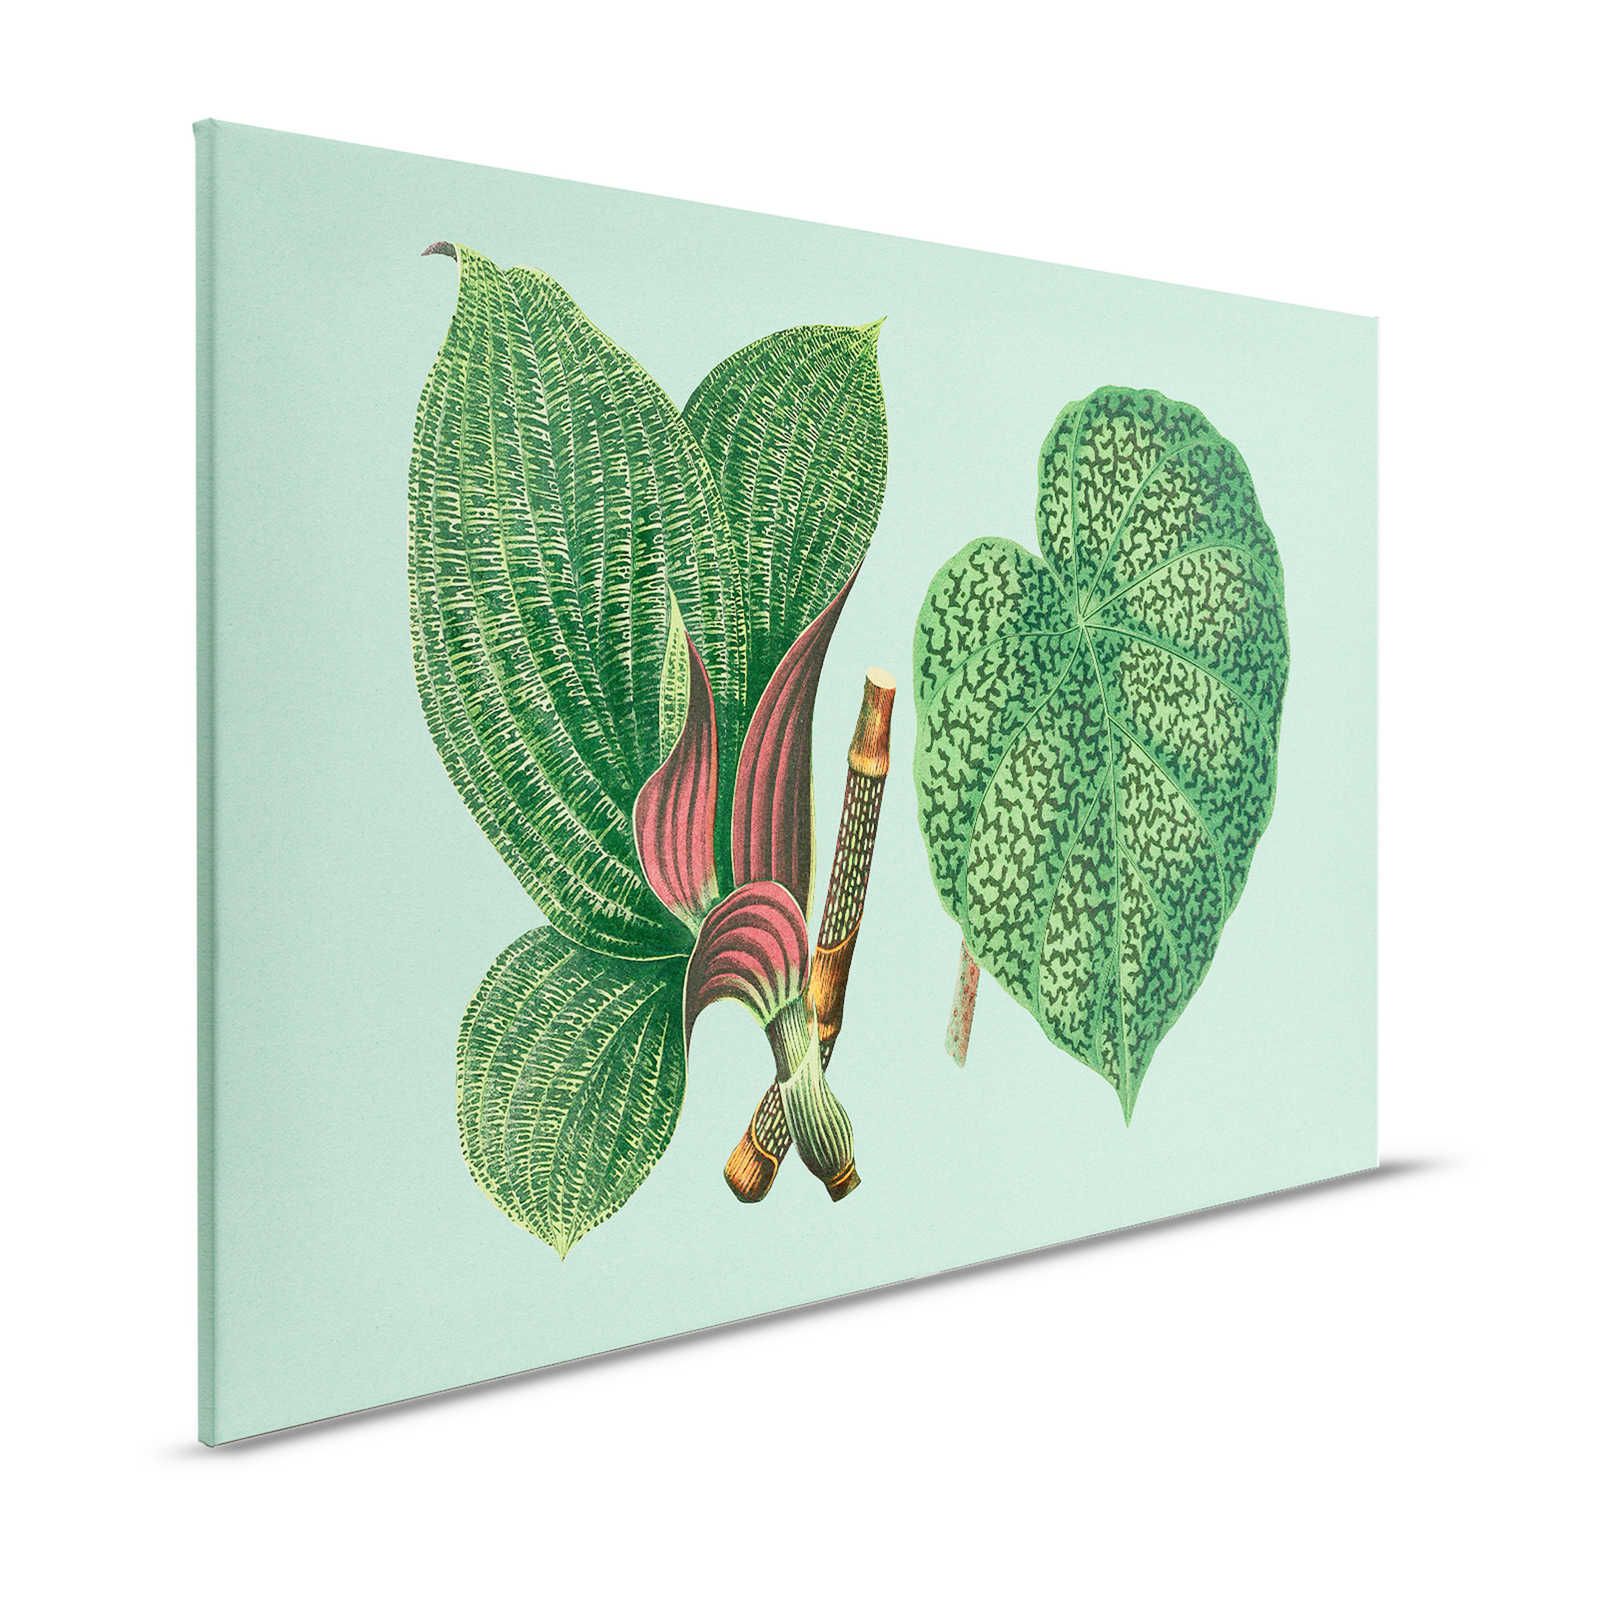 Leaf Garden 2 - Feuilles Tableau sur toile Vert avec plantes tropicales - 1,20 m x 0,80 m
